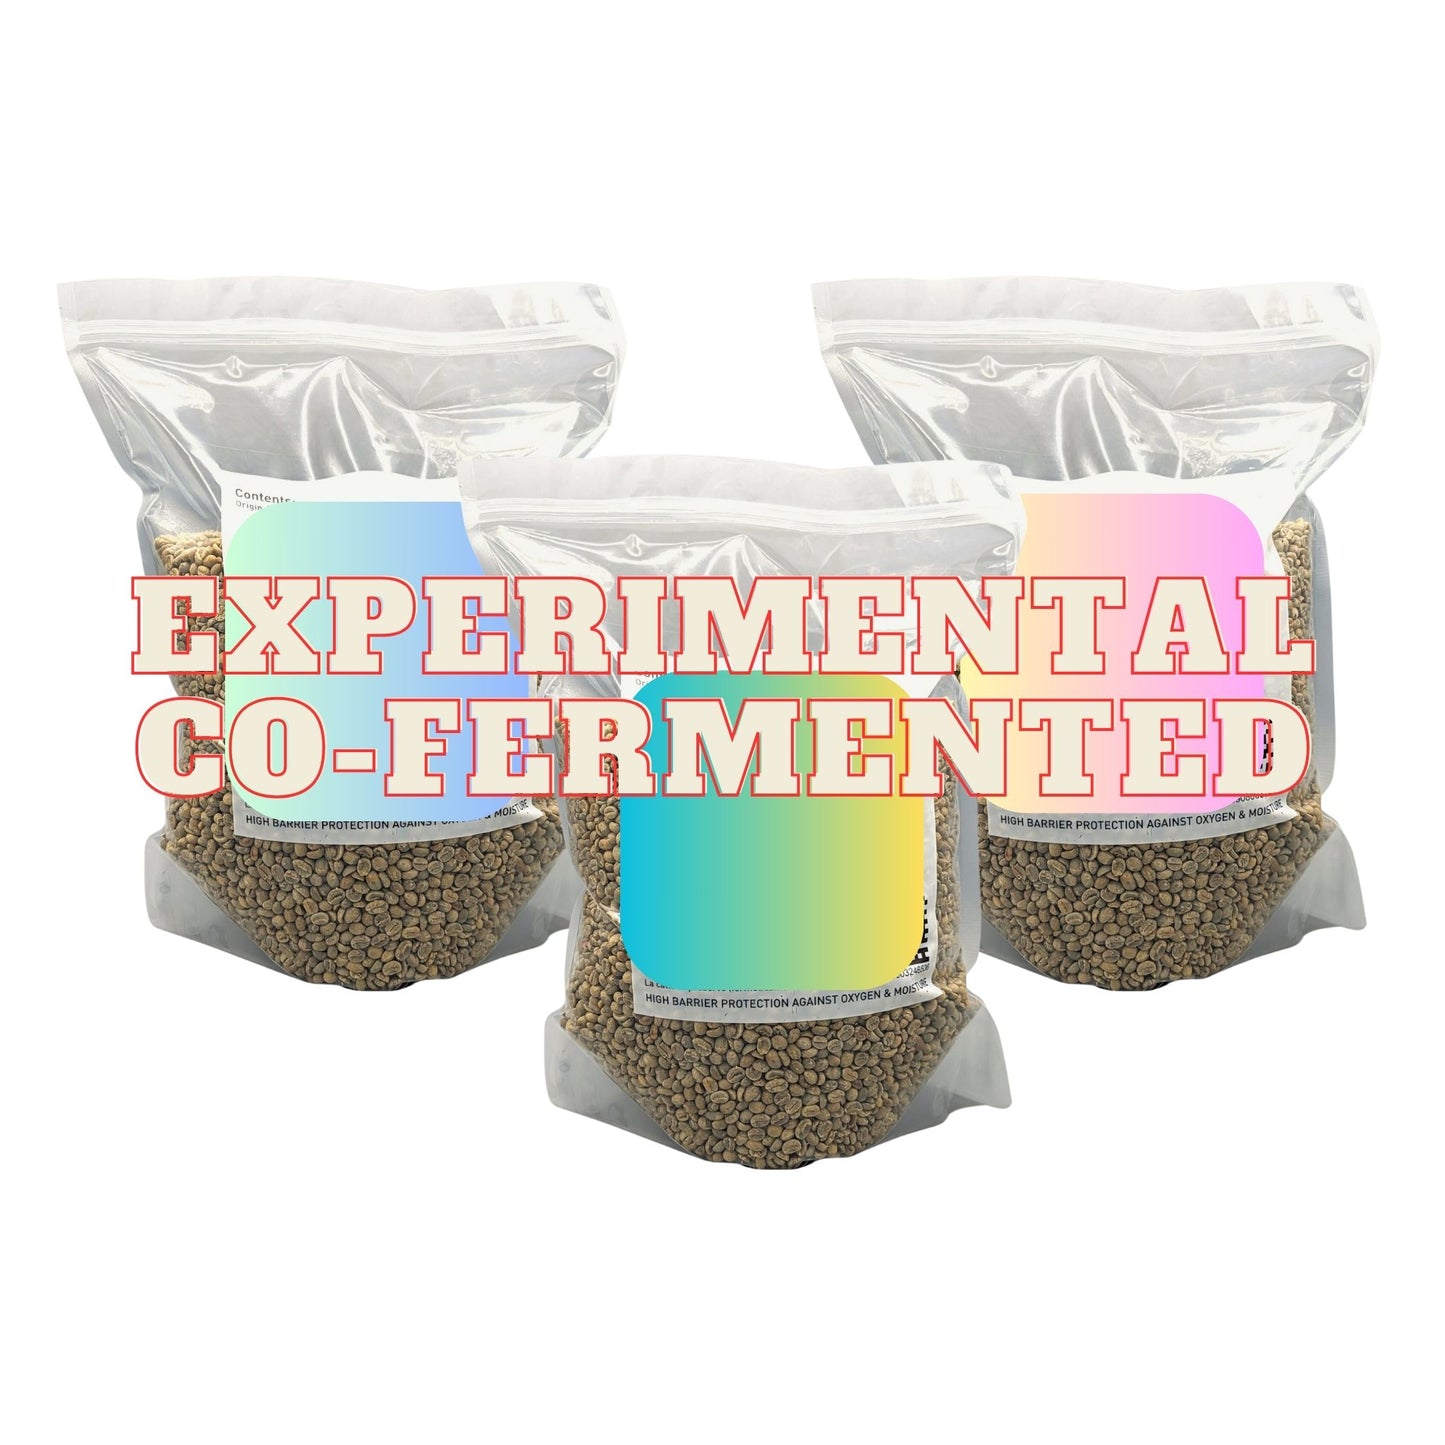 Probierpaket 3kg (EXPERIMENTELL / Co-Fermentierung) - Kolumbien